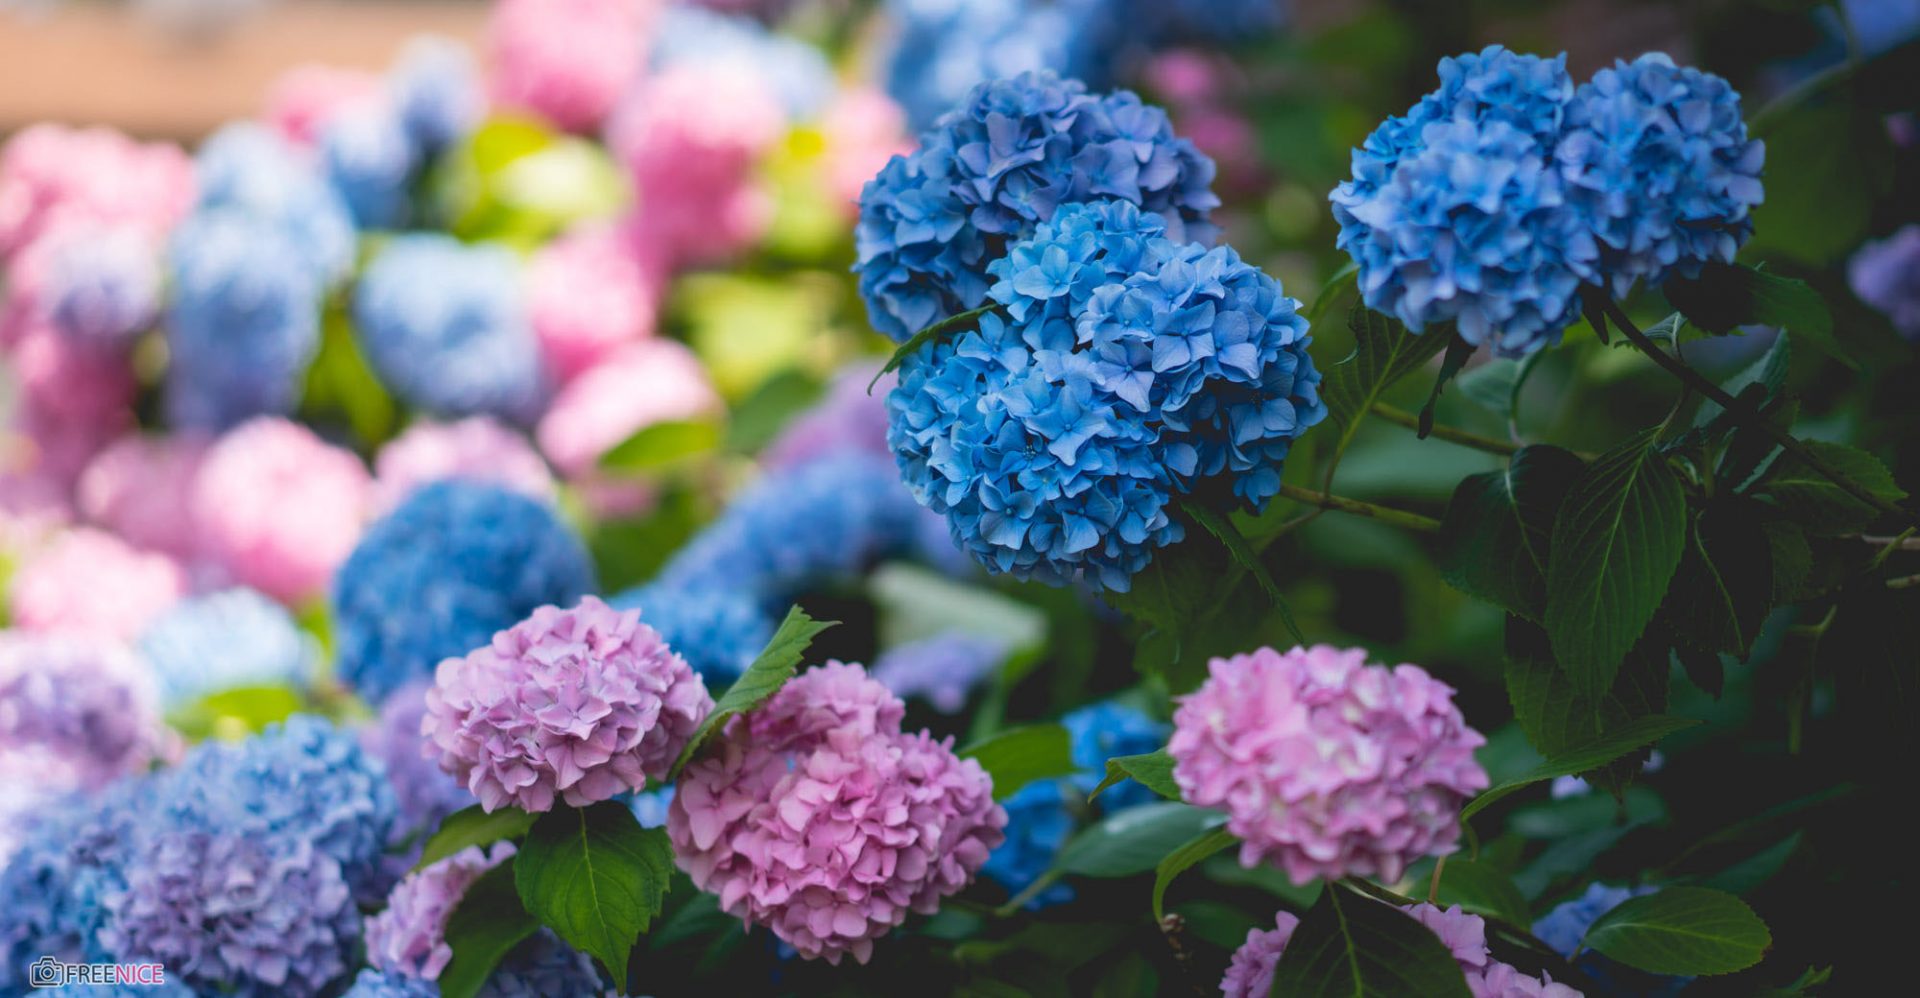 Hoa cẩm tú cầu không chỉ đẹp mắt mà còn rất tinh tế và ý nghĩa. Với sự khéo léo trong ánh sáng và bố cục, các bông hoa này sẽ mang đến cho bạn một trải nghiệm thực sự đáng nhớ.